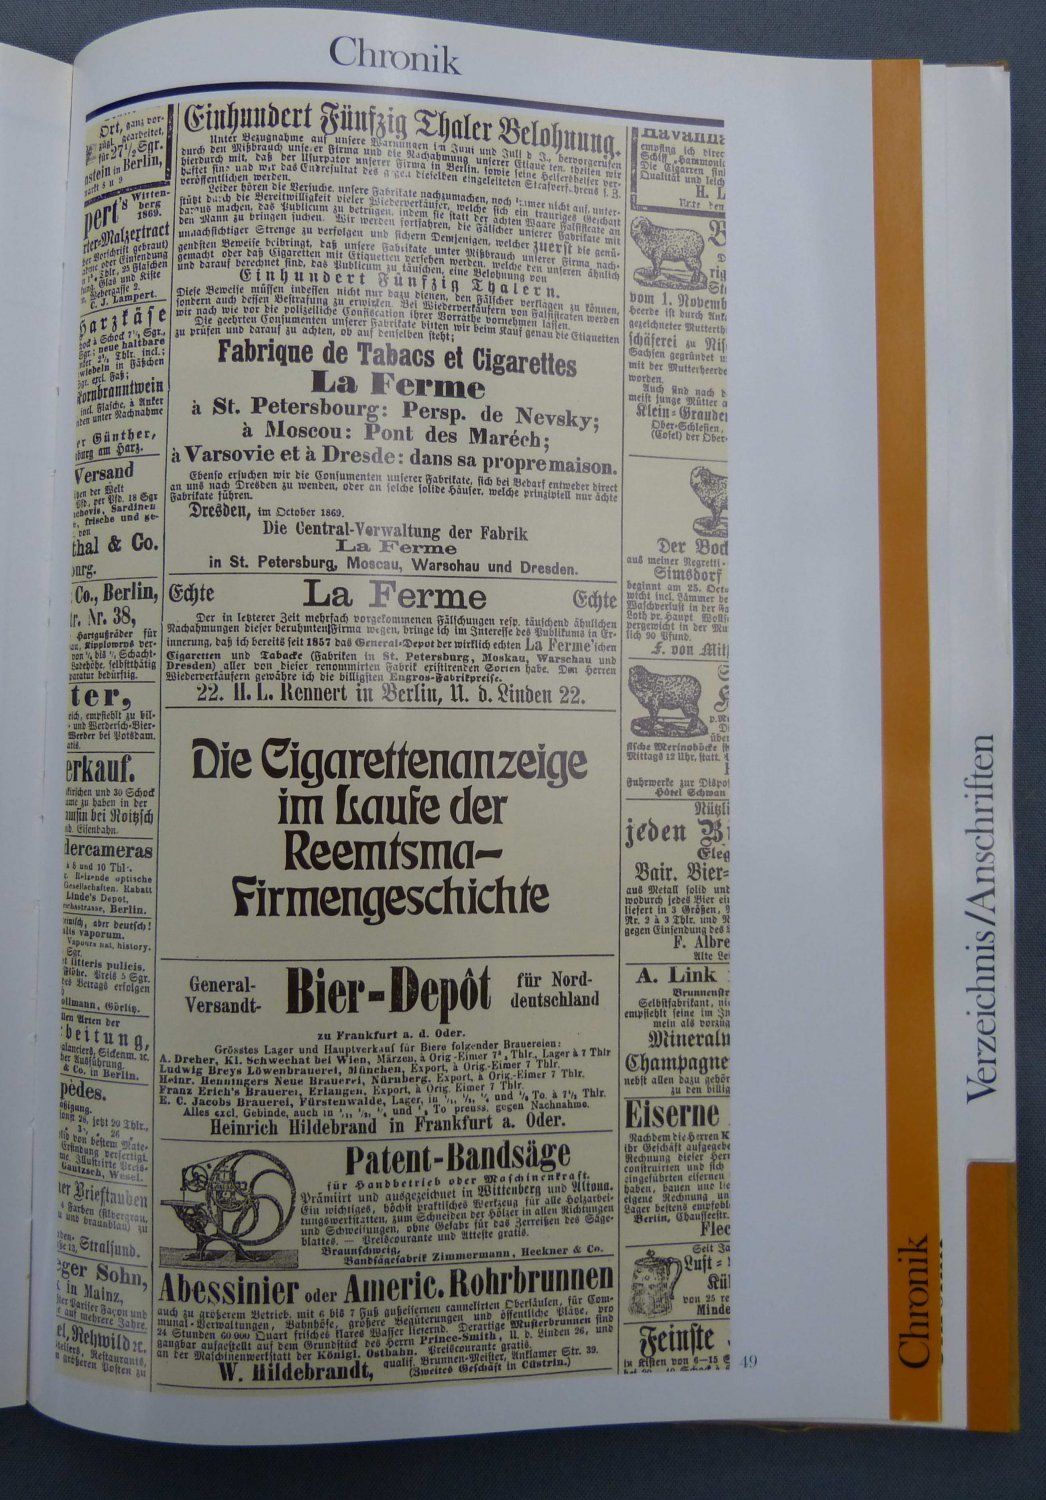 REEMTSMA CIGARETTENFABRIKEN GmbH HAMBURG:  Reemtsma Geschäftsbericht 1976. (Darin: Die Cigarettenanzeige im Laufe der Reemtsma-Firmengeschichte.) 